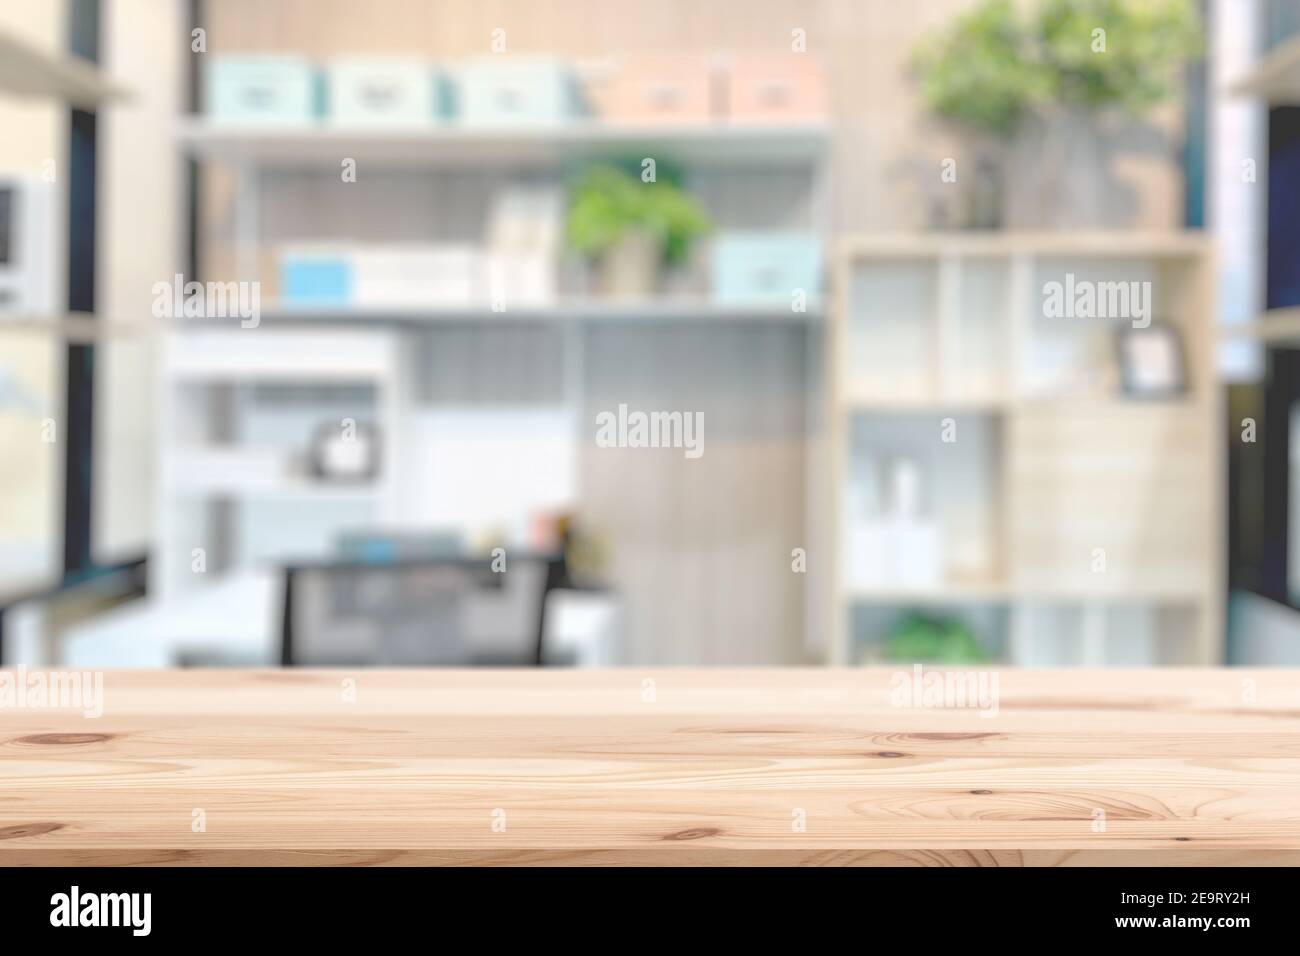 Home Interieur mit Holztisch Platz für Home Produkte Werbung Hintergrund Vorlage. Stockfoto